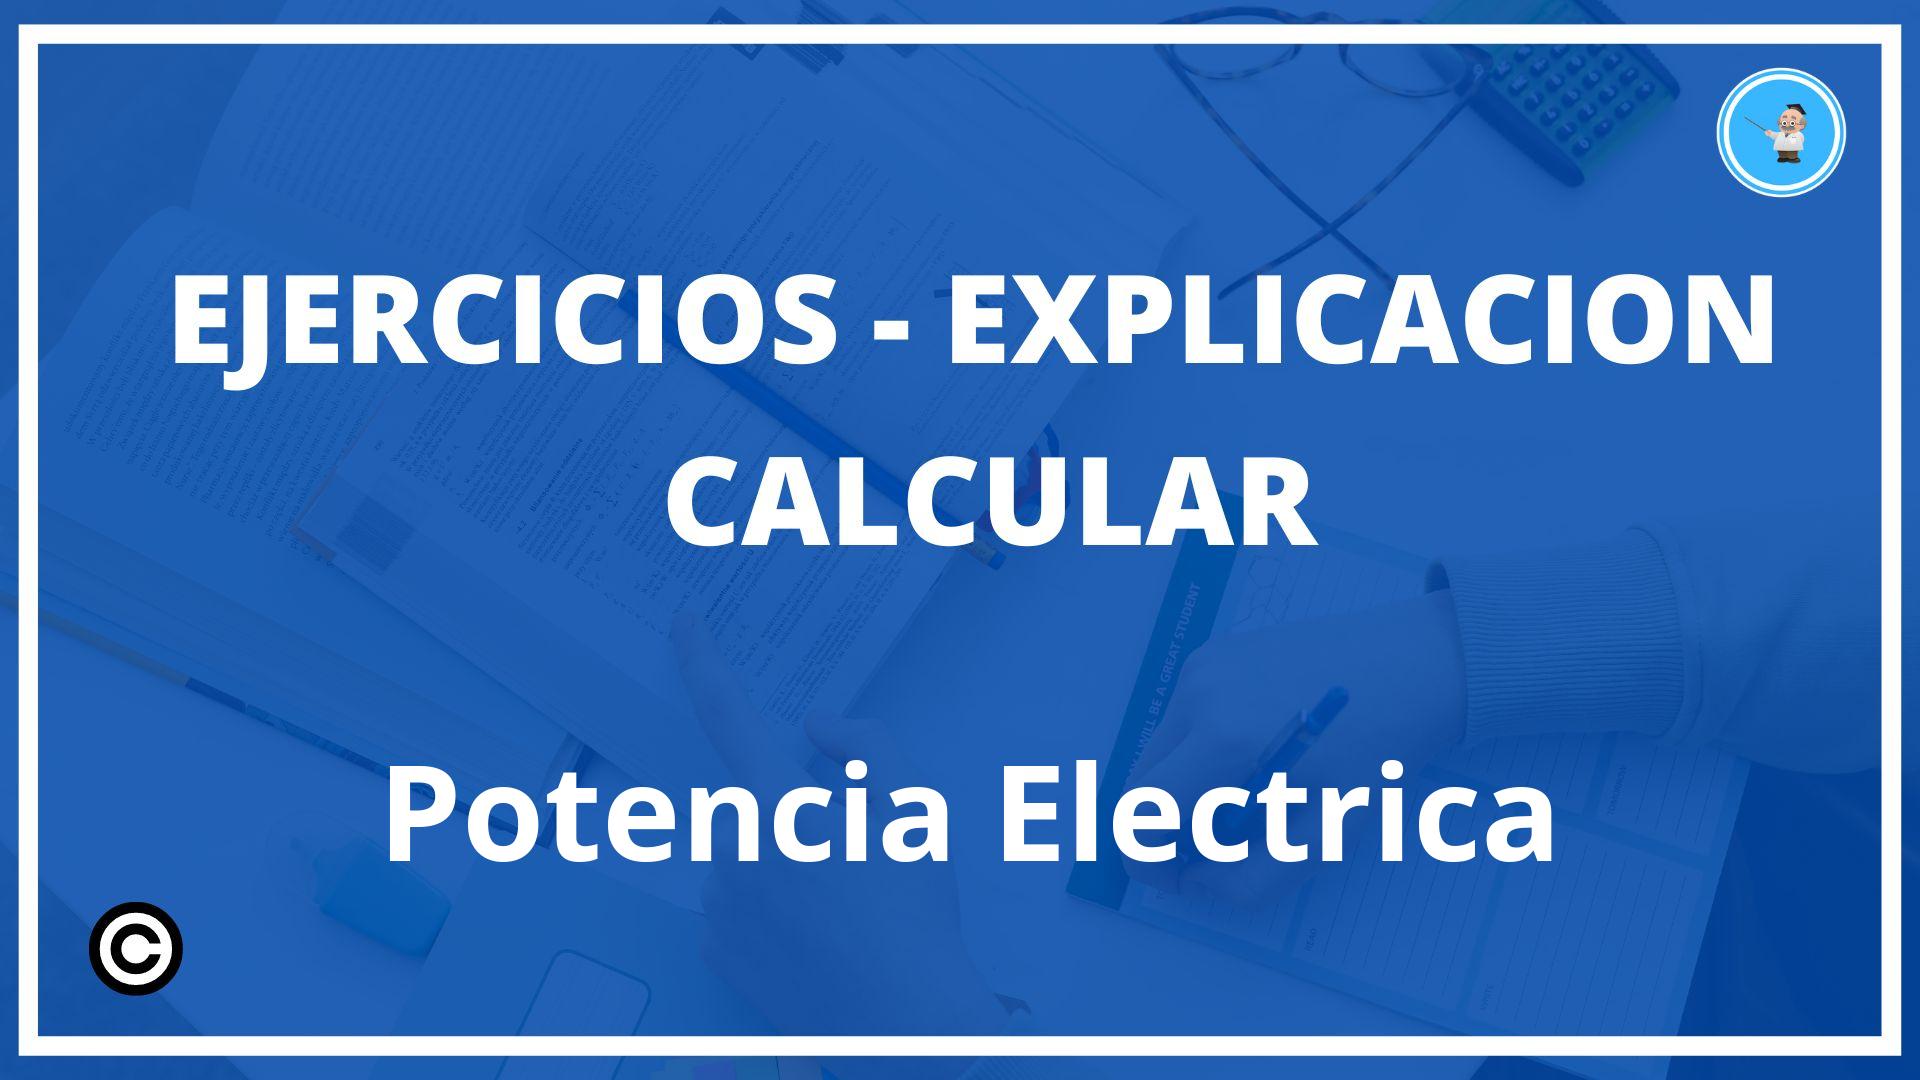 Calcular Potencia Electrica Ejercicios Pdf 7565